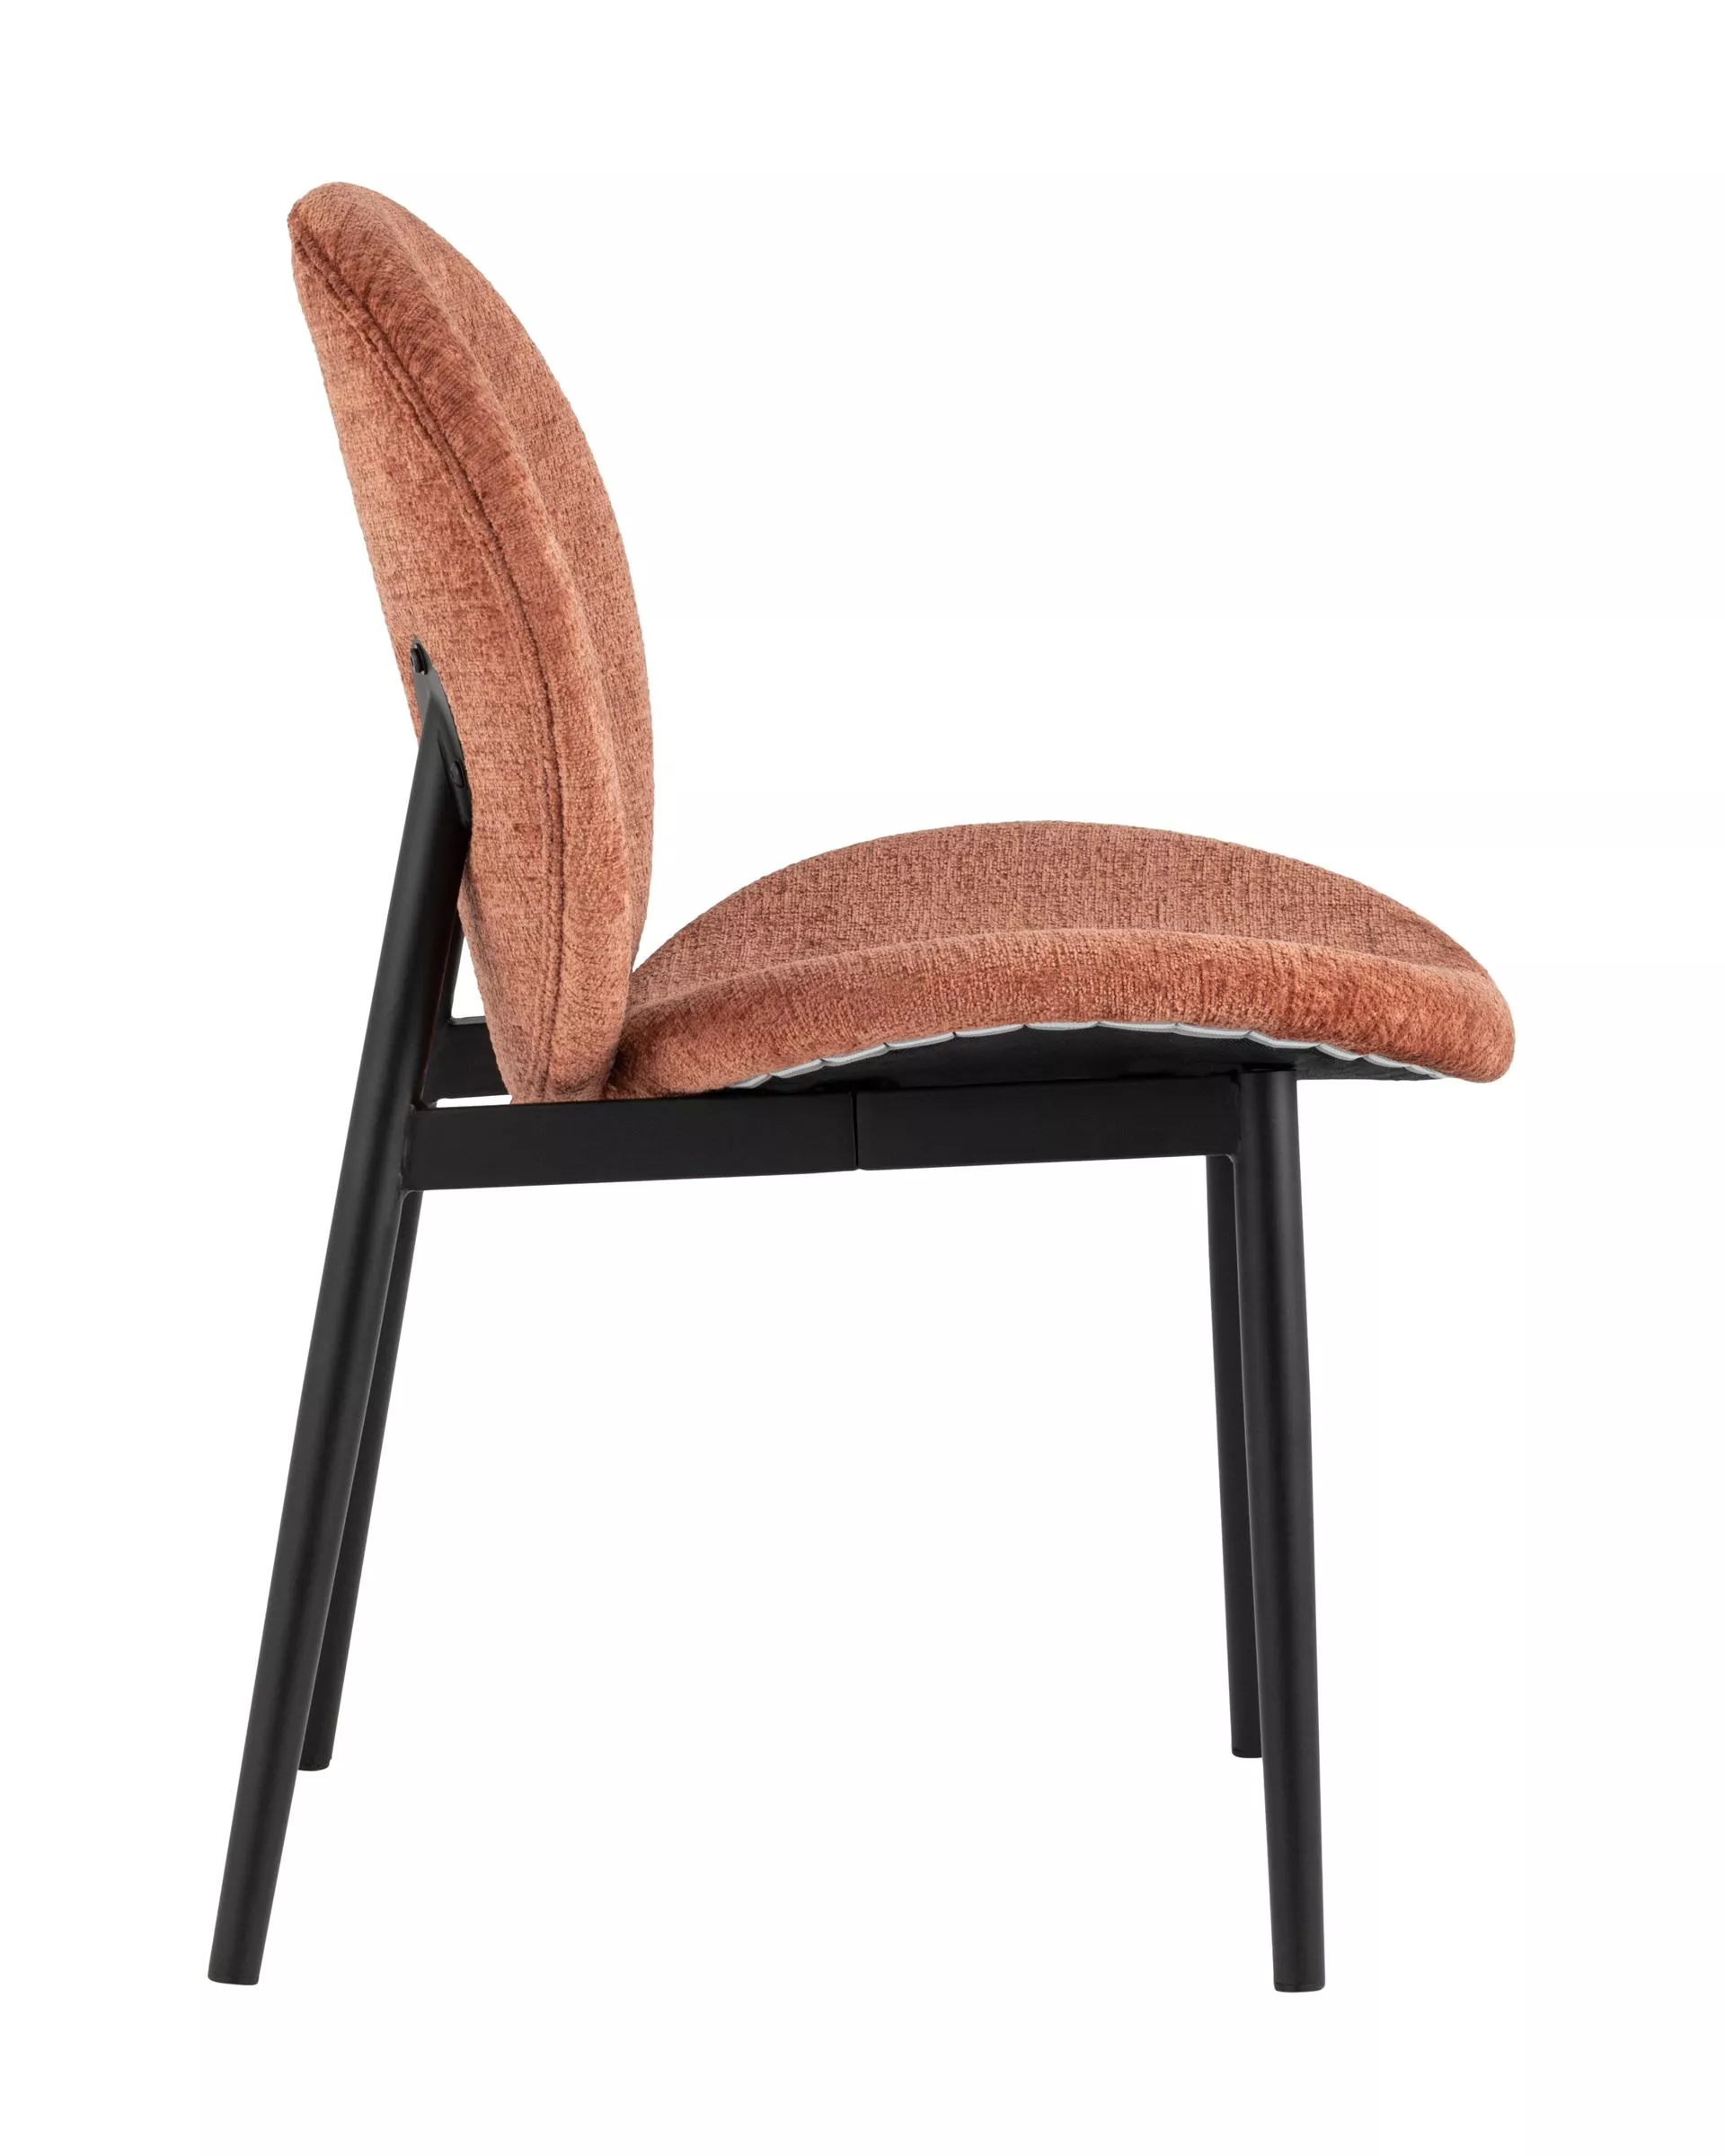 Комплект стульев Эллиот ткань альпака терракотовый 2 шт